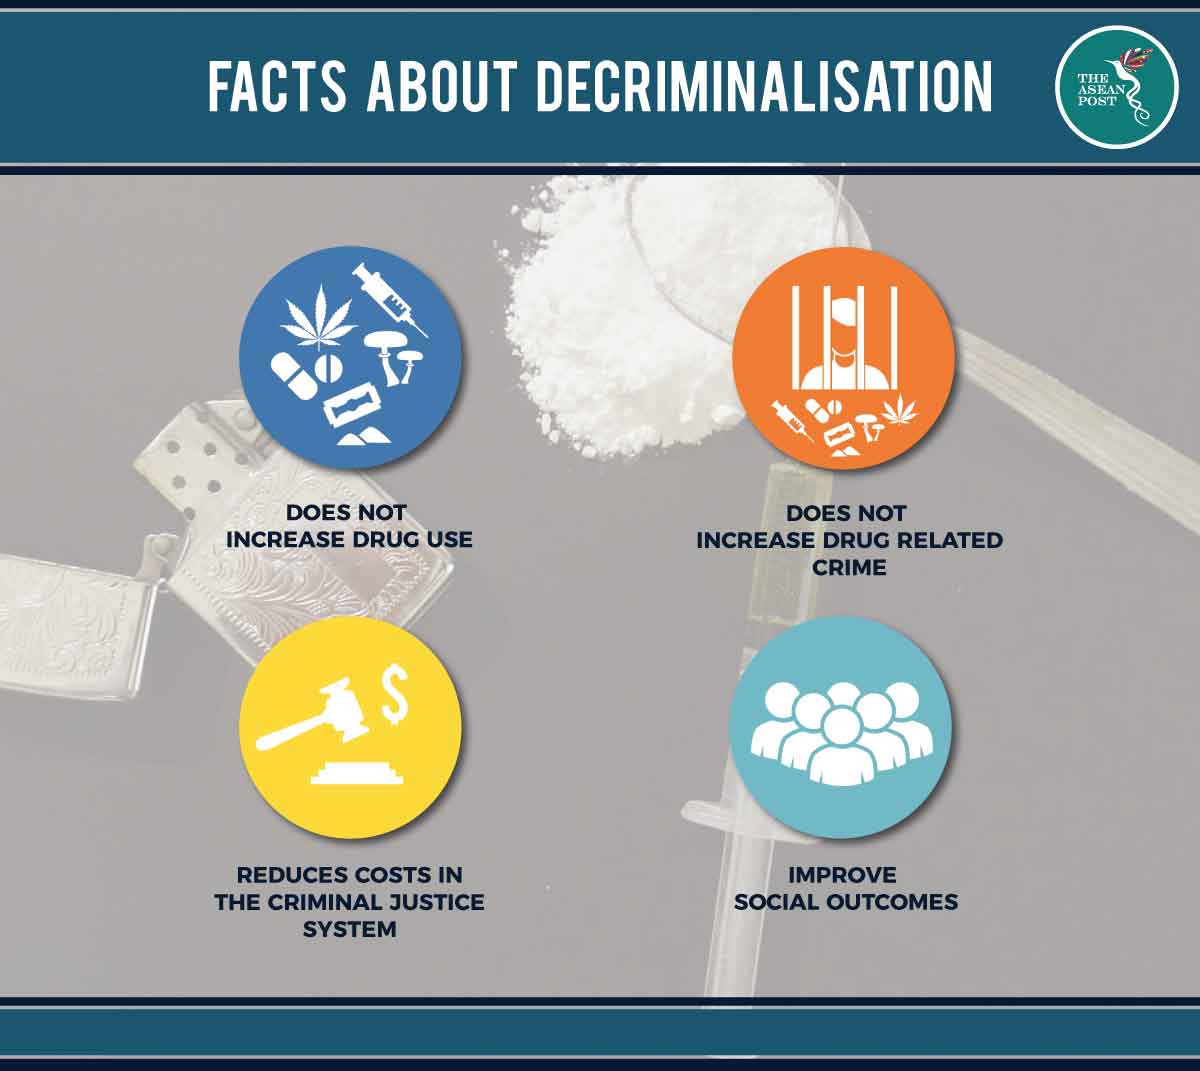 Facts about decriminalisation